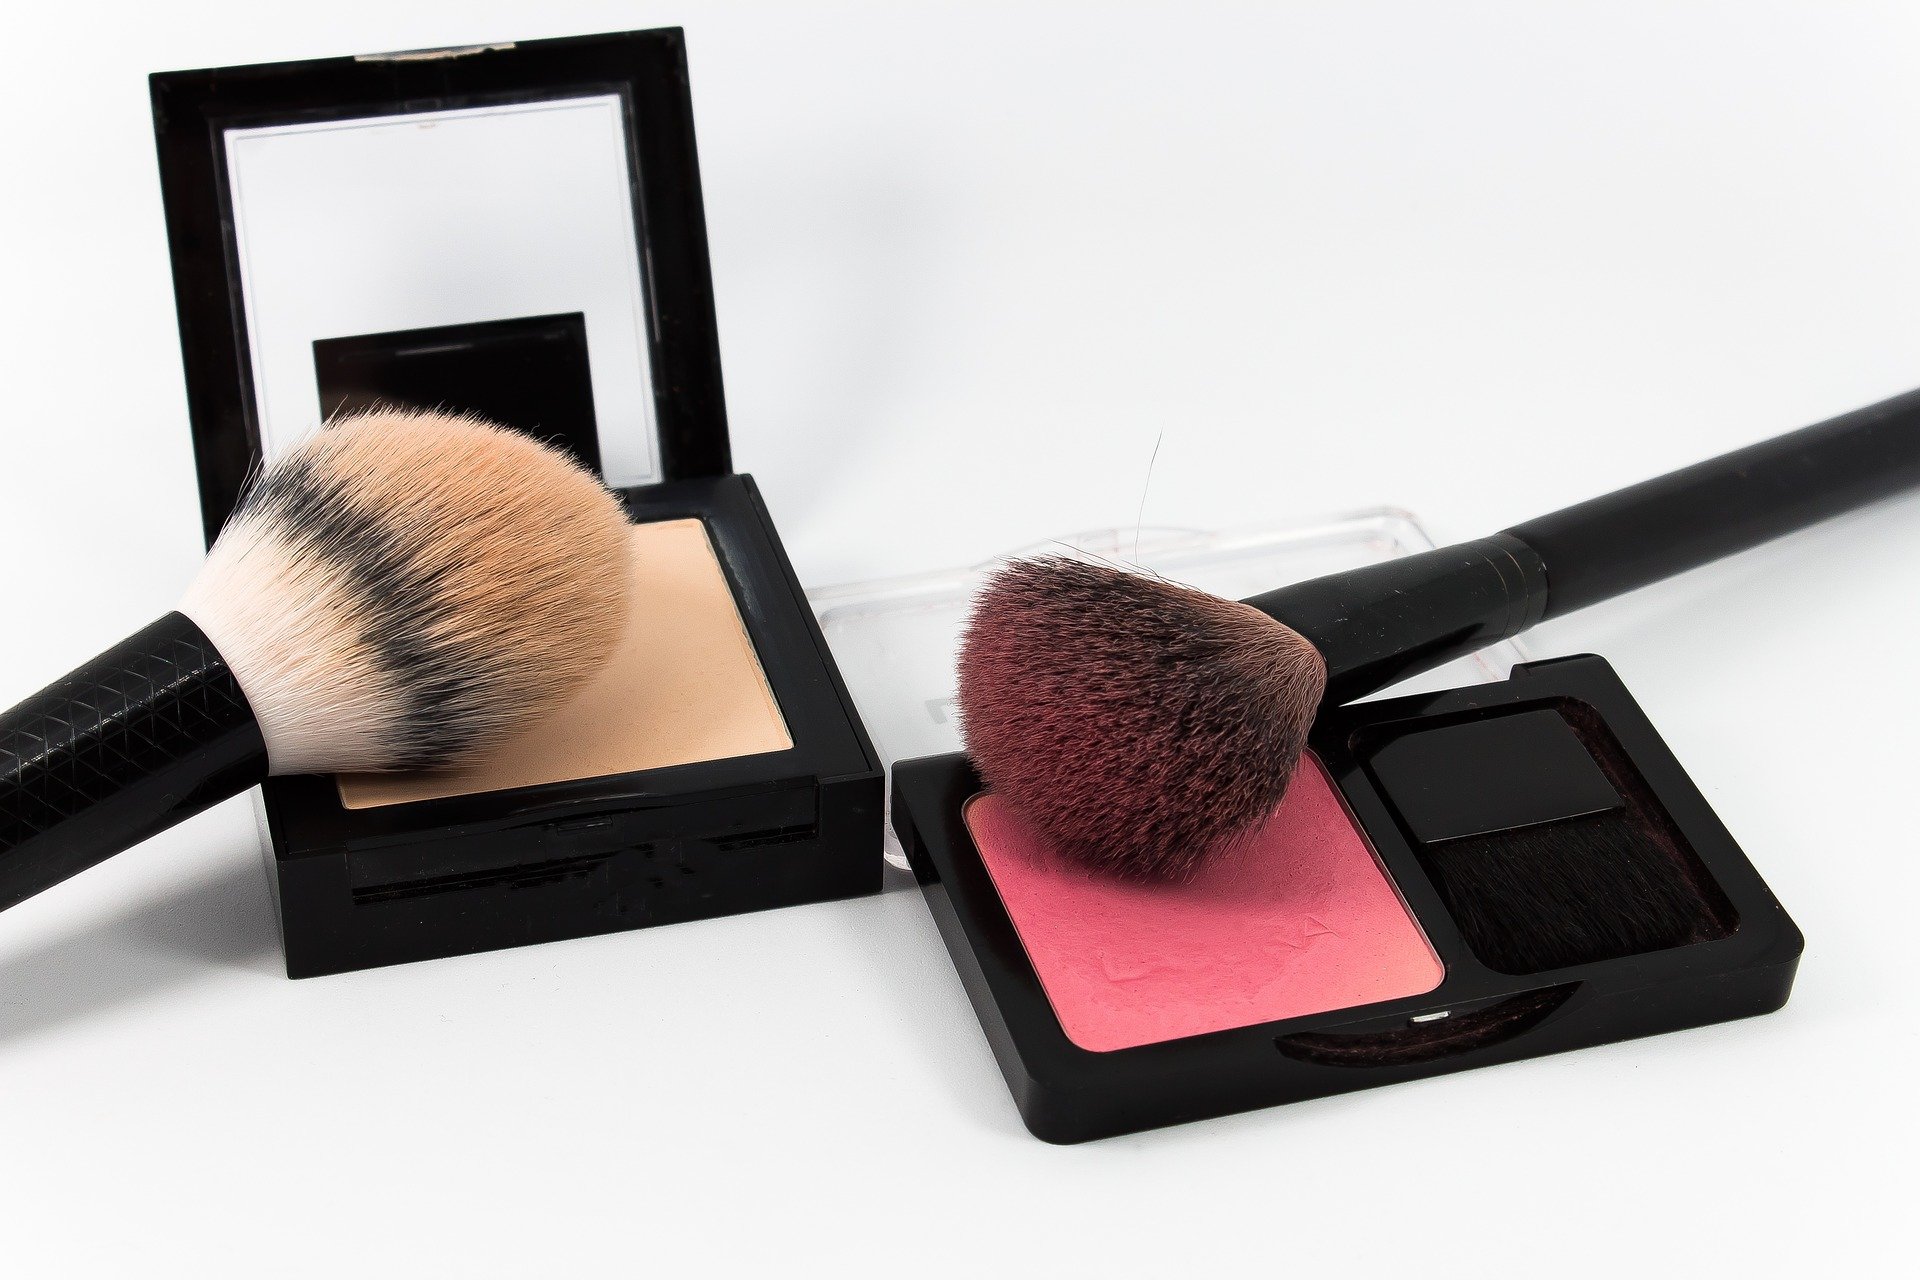 makeup-armani-beauty-schminke-blush-pinsel-spiegel